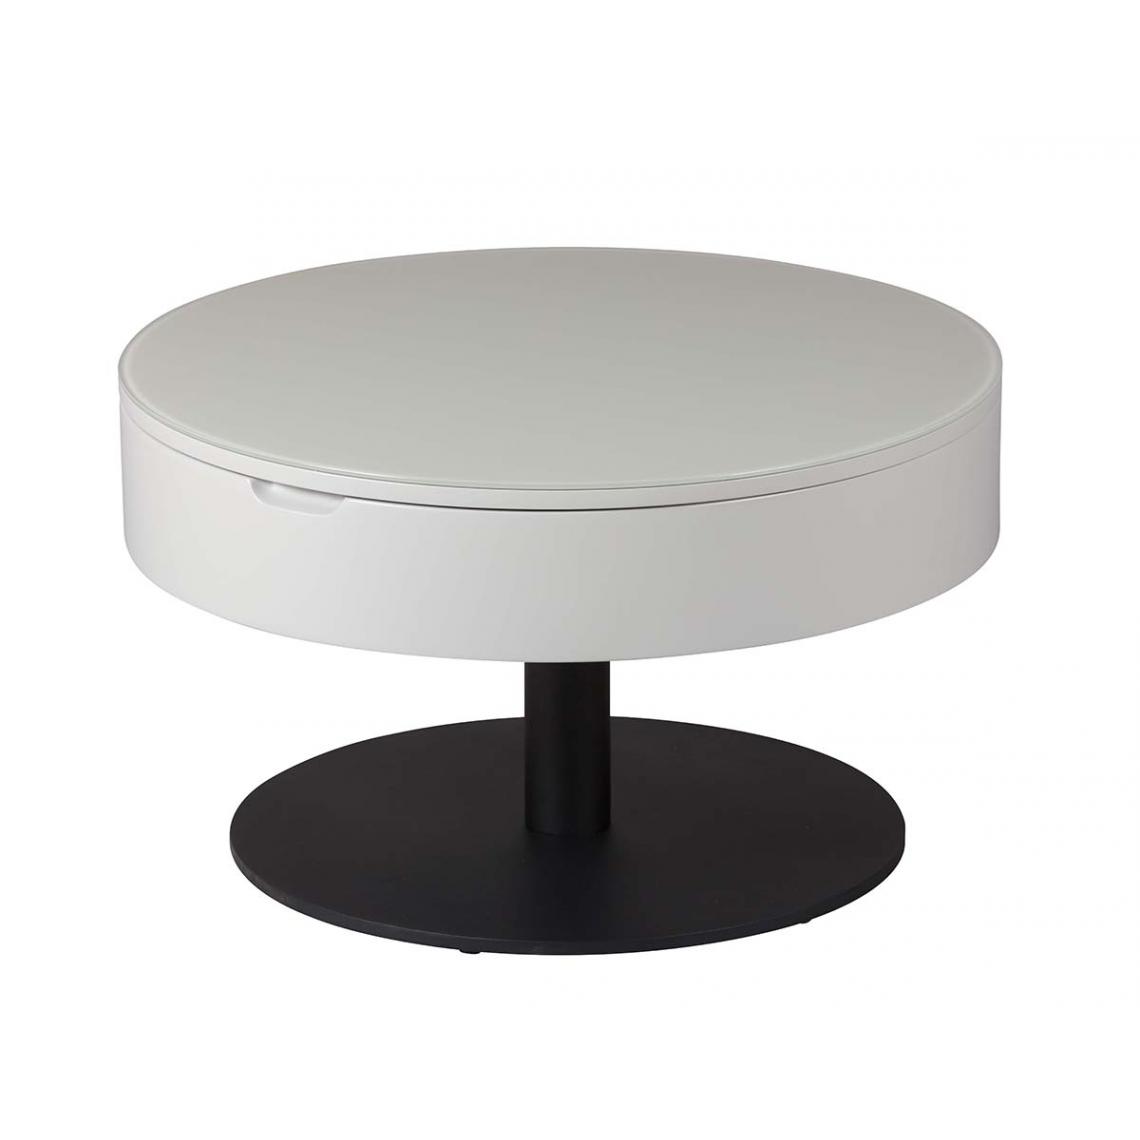 Pegane - Table basse en acier / MDF coloris gris clair -Diamètre 70-94 x hauteur 40-64 cm - Tables basses